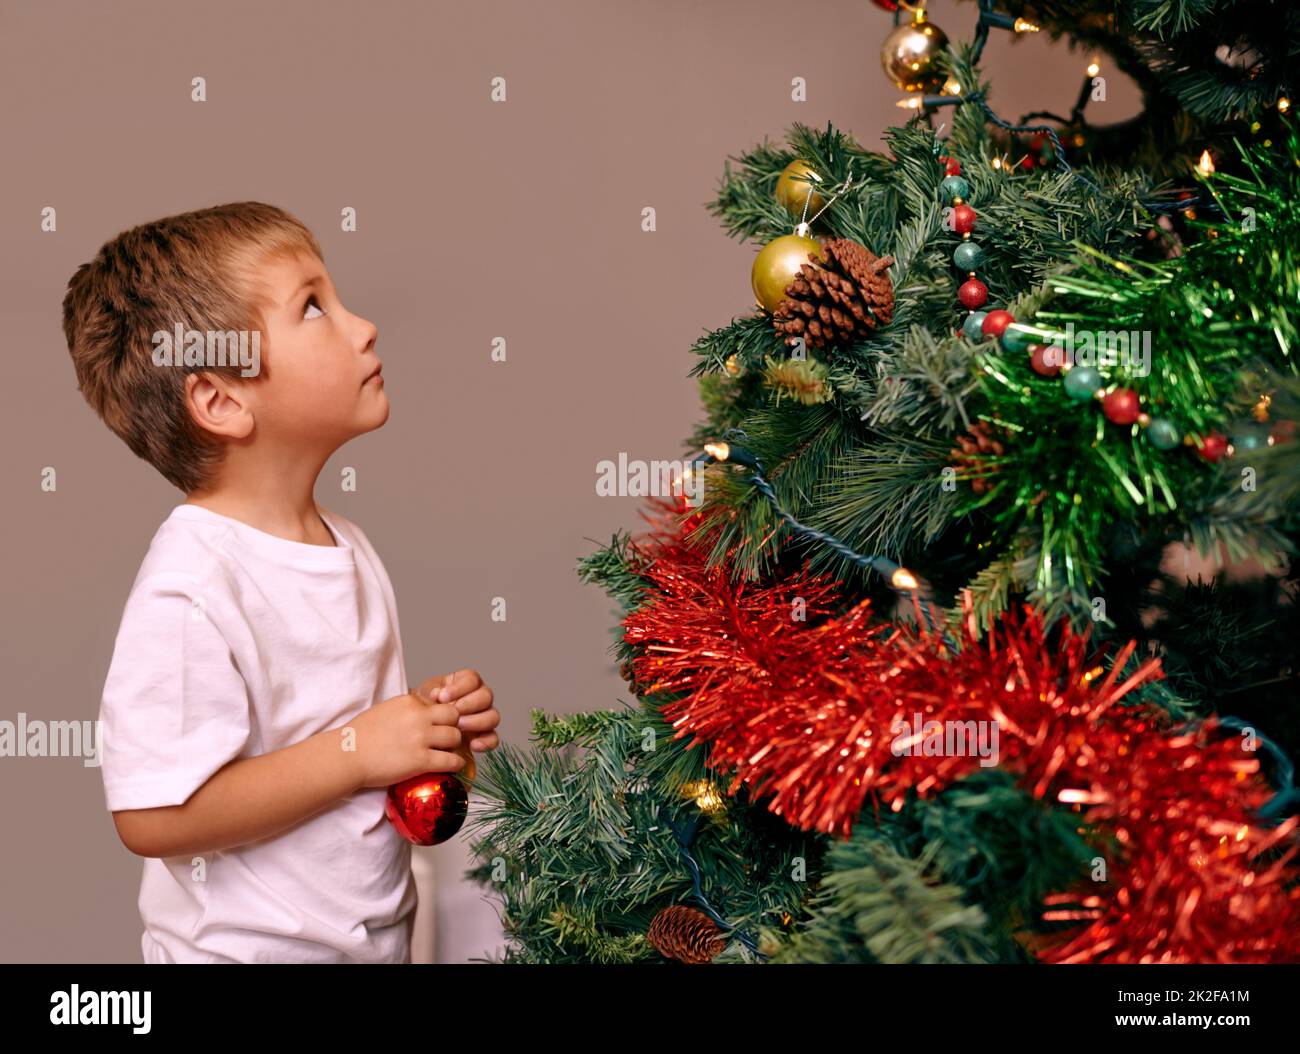 Weihnachten ist eine Zeit des kindlichen Wunders Ein kleiner Junge, der einen Weihnachtsbaum schmückt. Stockfoto